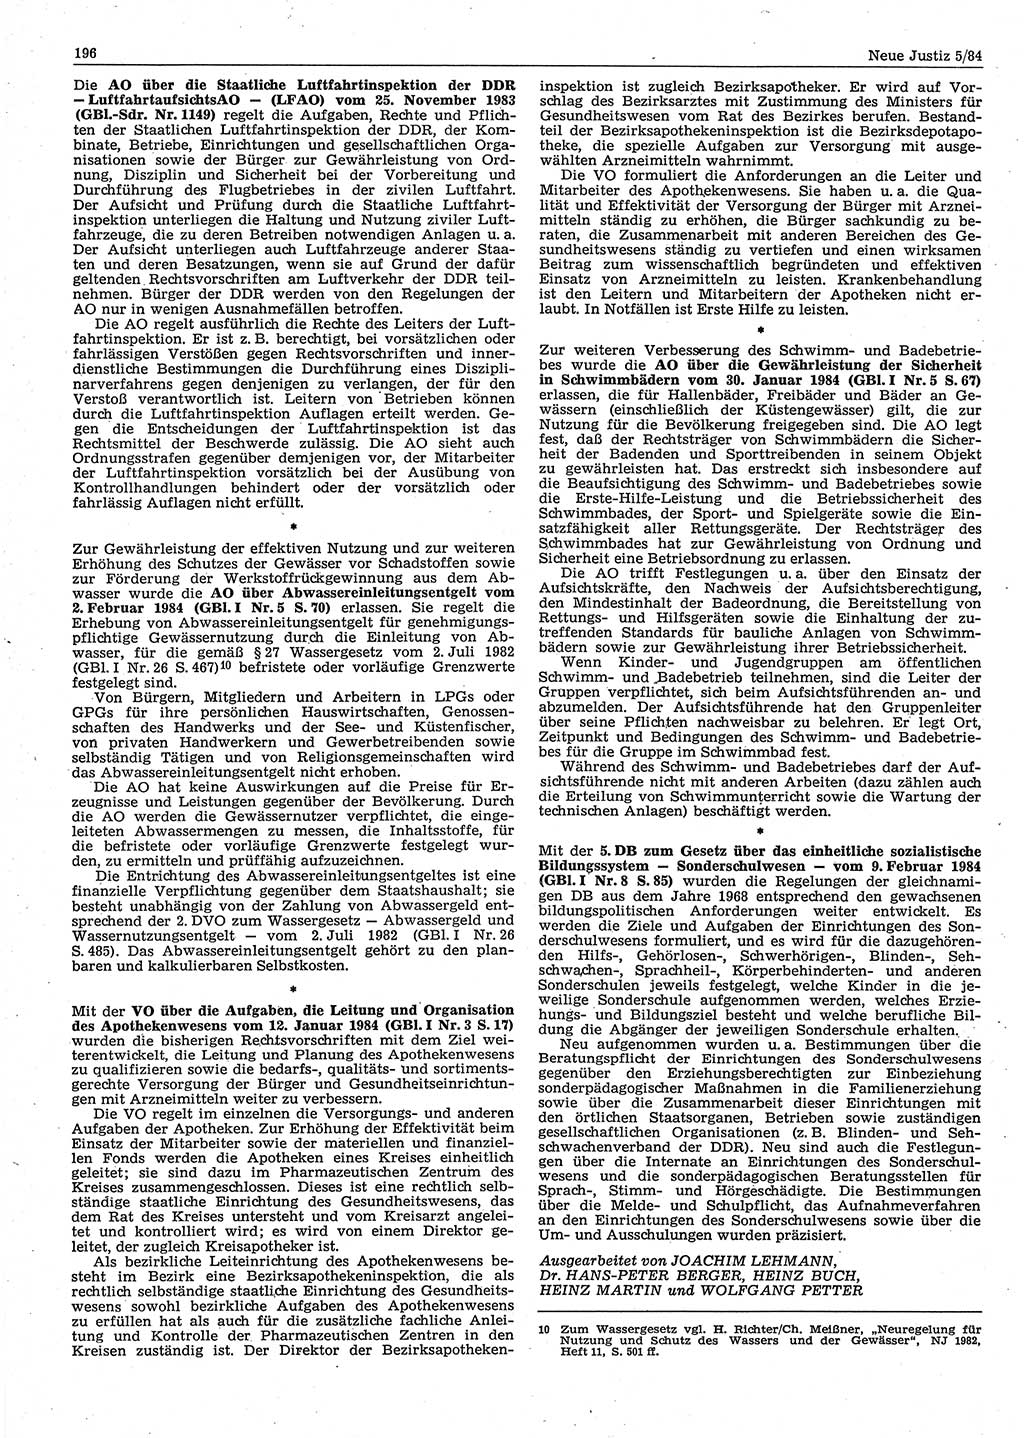 Neue Justiz (NJ), Zeitschrift für sozialistisches Recht und Gesetzlichkeit [Deutsche Demokratische Republik (DDR)], 38. Jahrgang 1984, Seite 196 (NJ DDR 1984, S. 196)